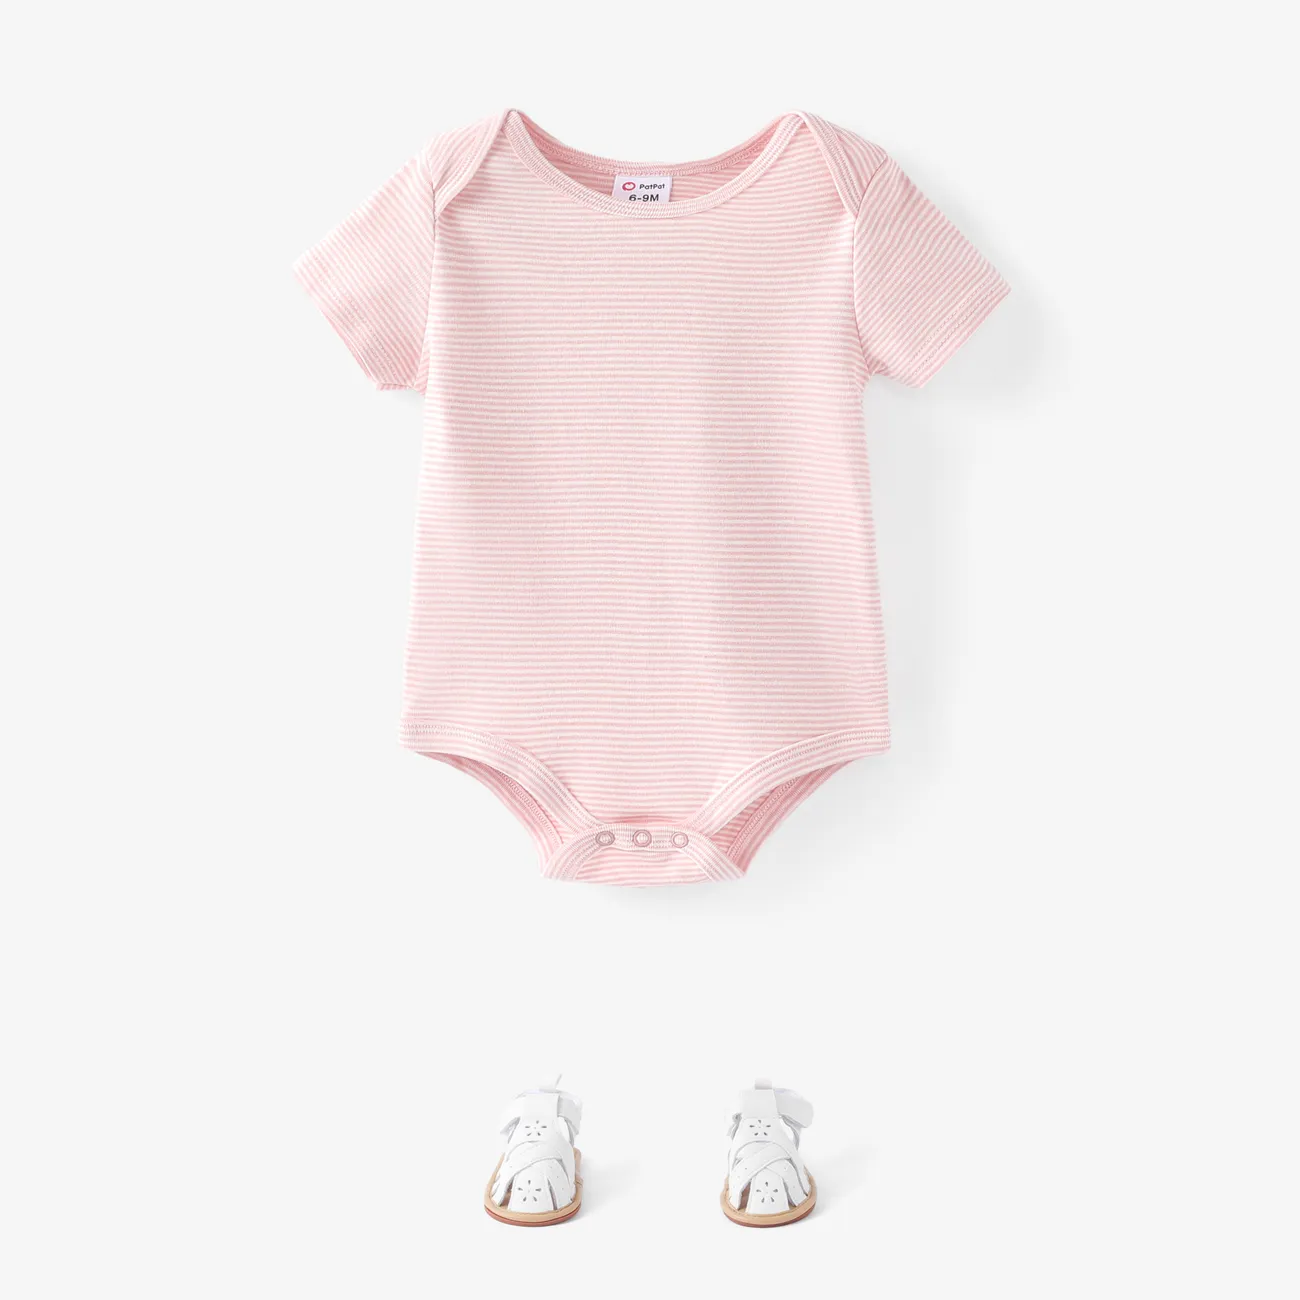 3 件裝女嬰/男嬰大像印花/純色短袖連身衣 粉色 big image 1